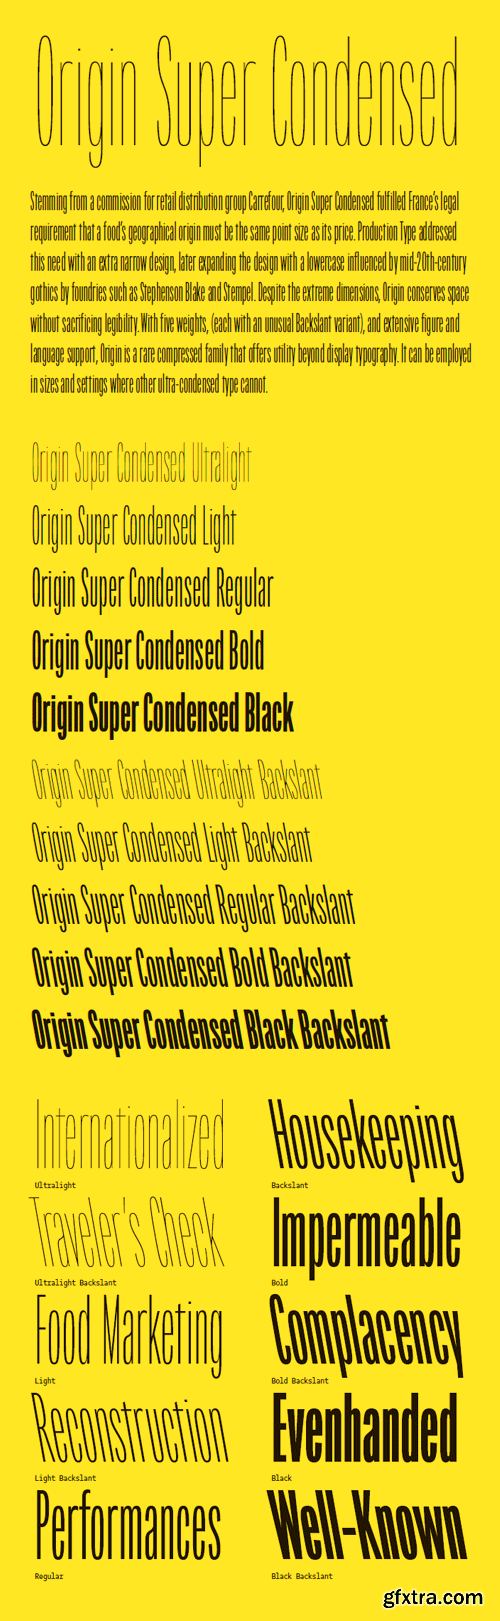 Origin Super Condensed Font Family